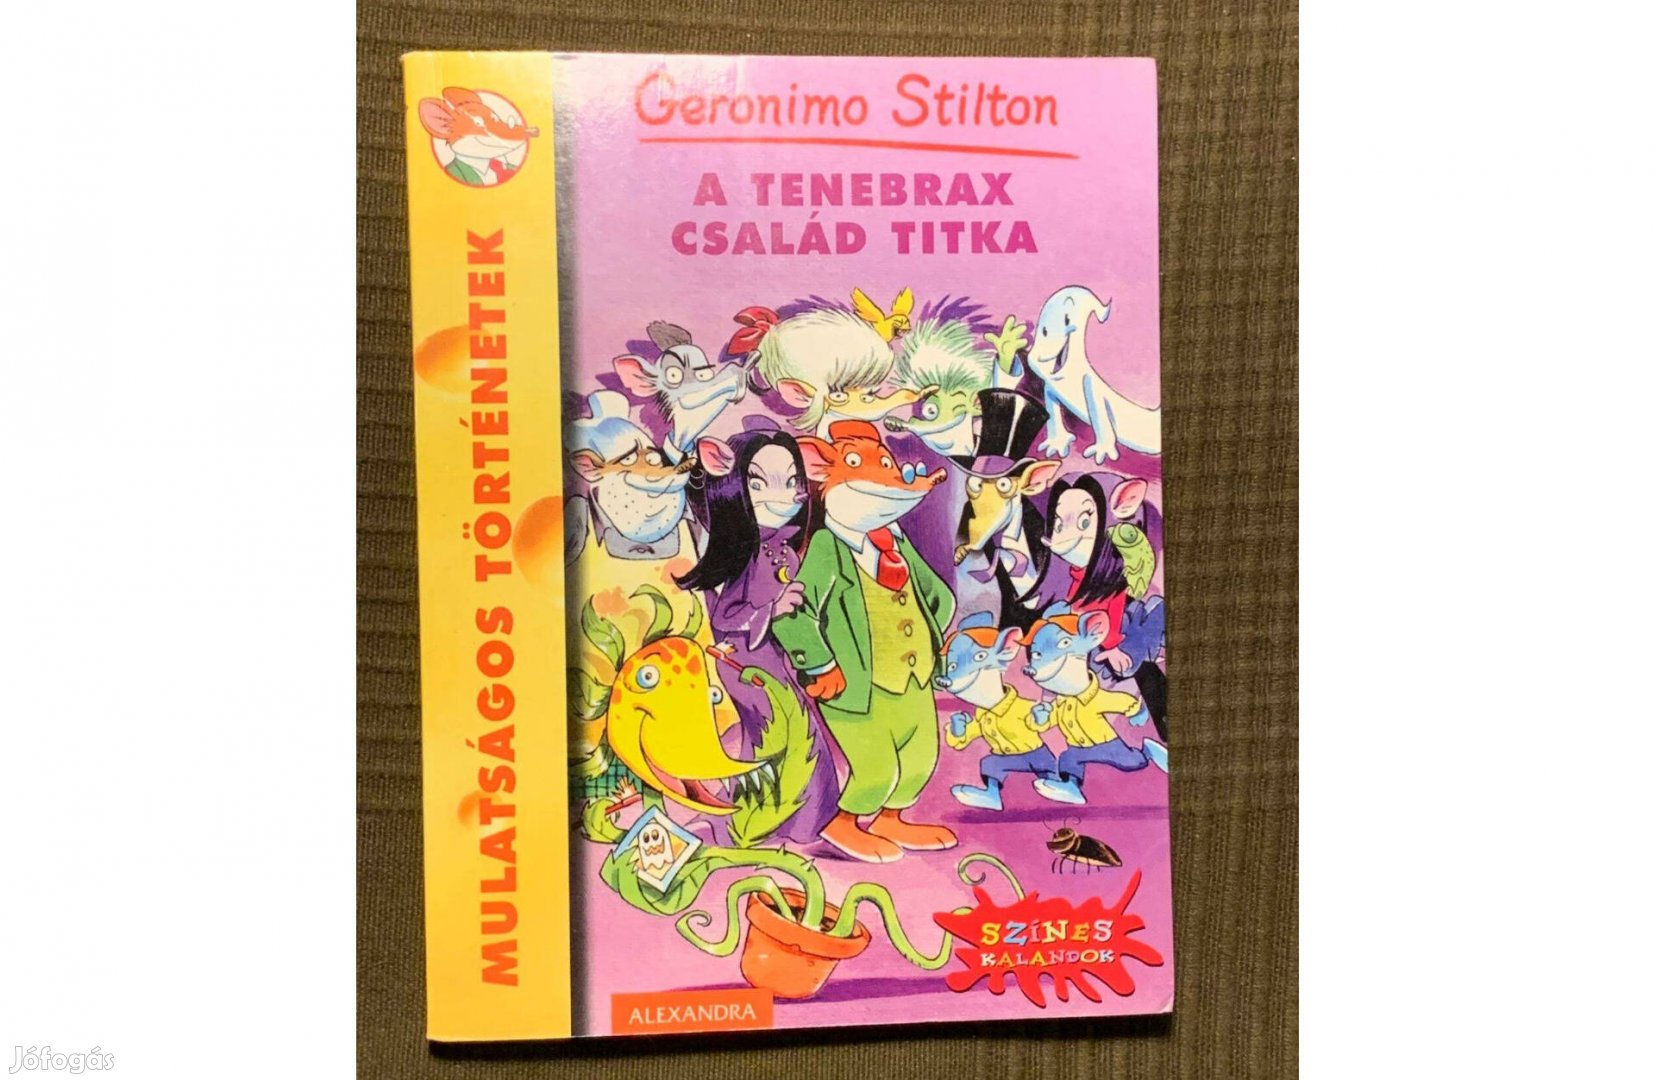 Geronimo Stilton: A Tenebrax család titka